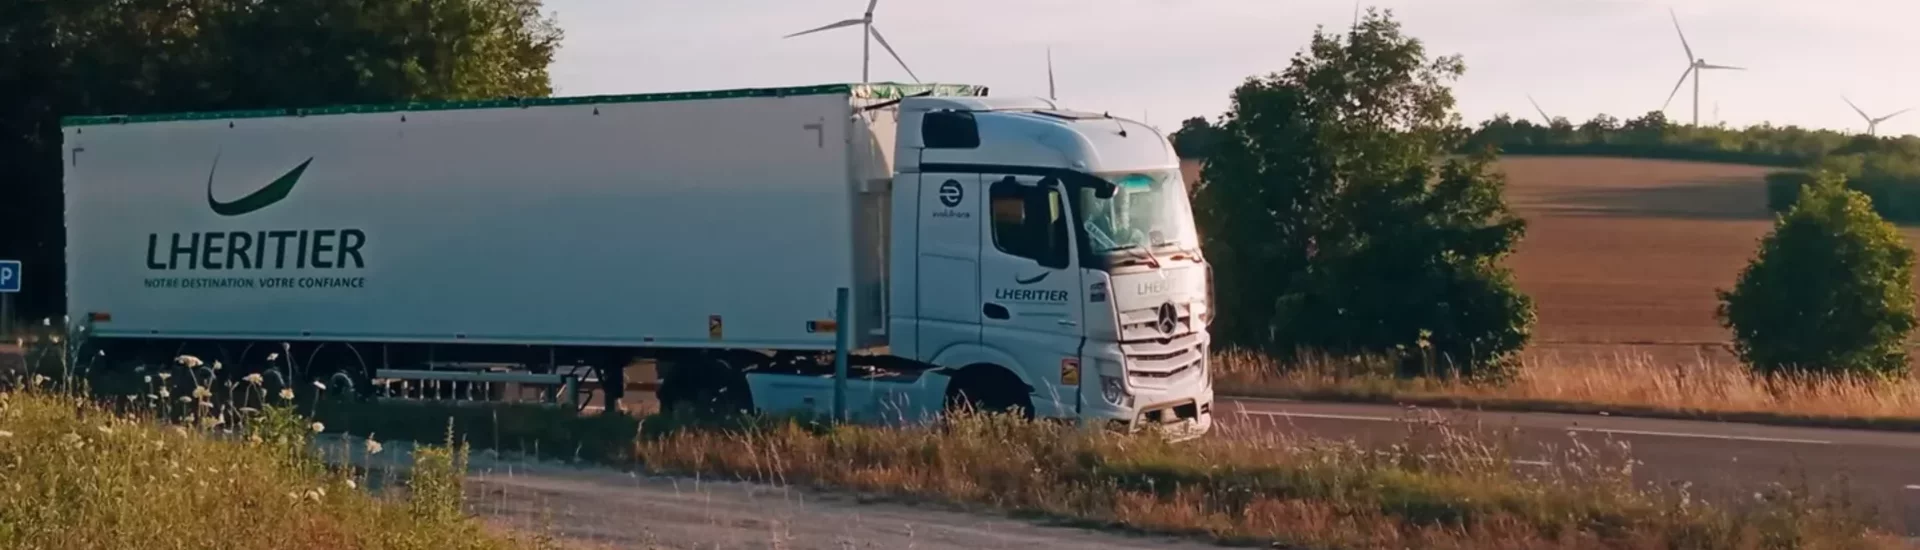 Lhéritier Gonzalez Transports - Auvergne Distribution Logistique